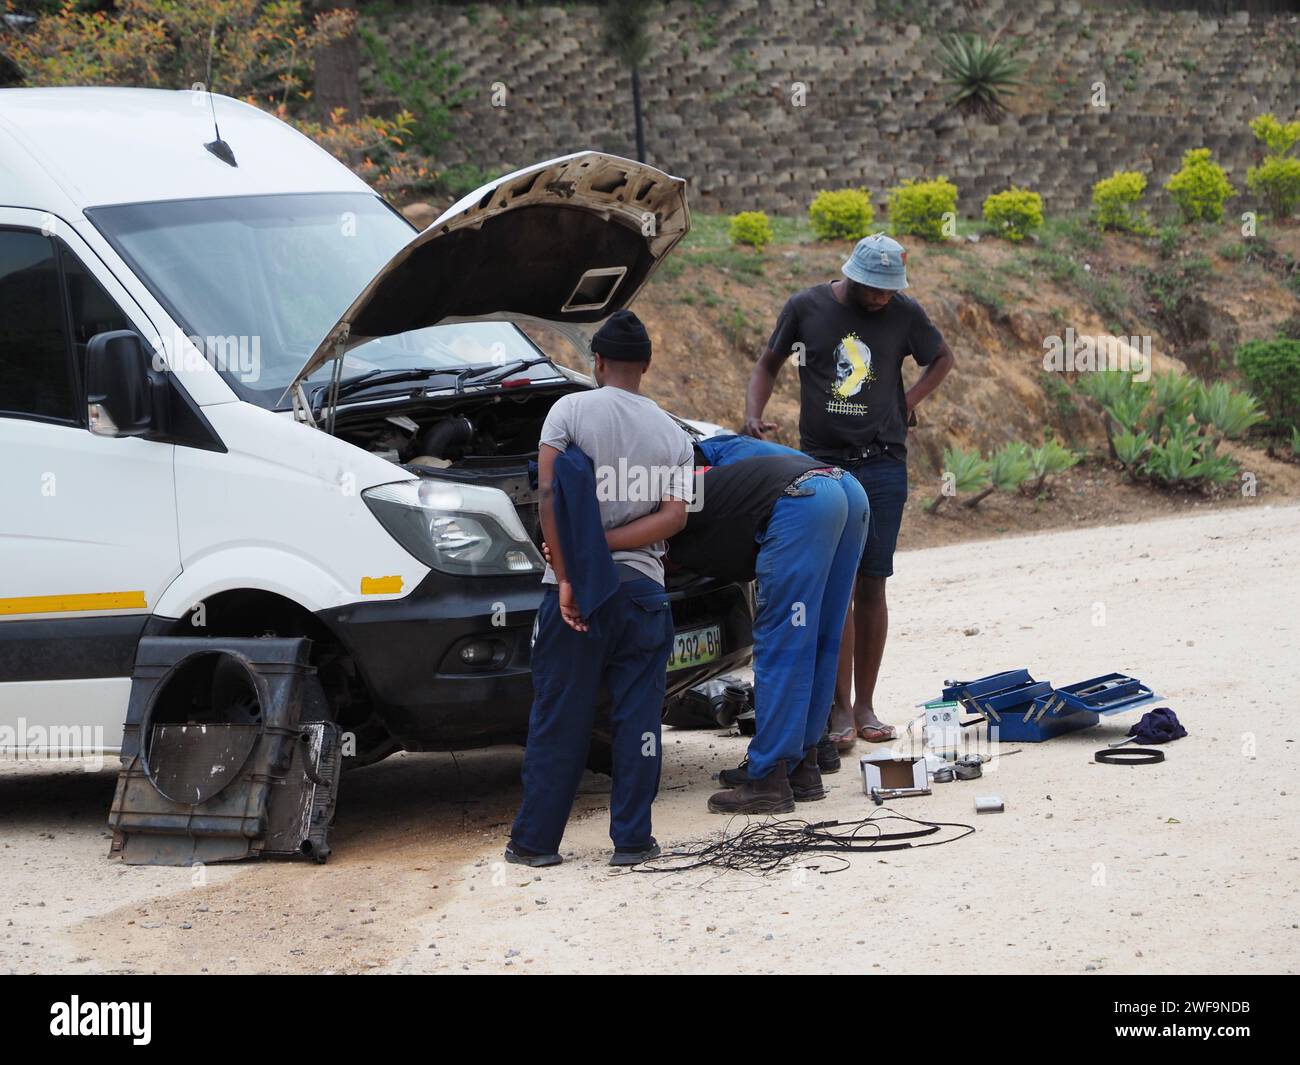 Une scène typique en Afrique, la réparation de véhicules routiers. Ce van est en cours de réparation près de Piggs Peak, eSwatini. Banque D'Images